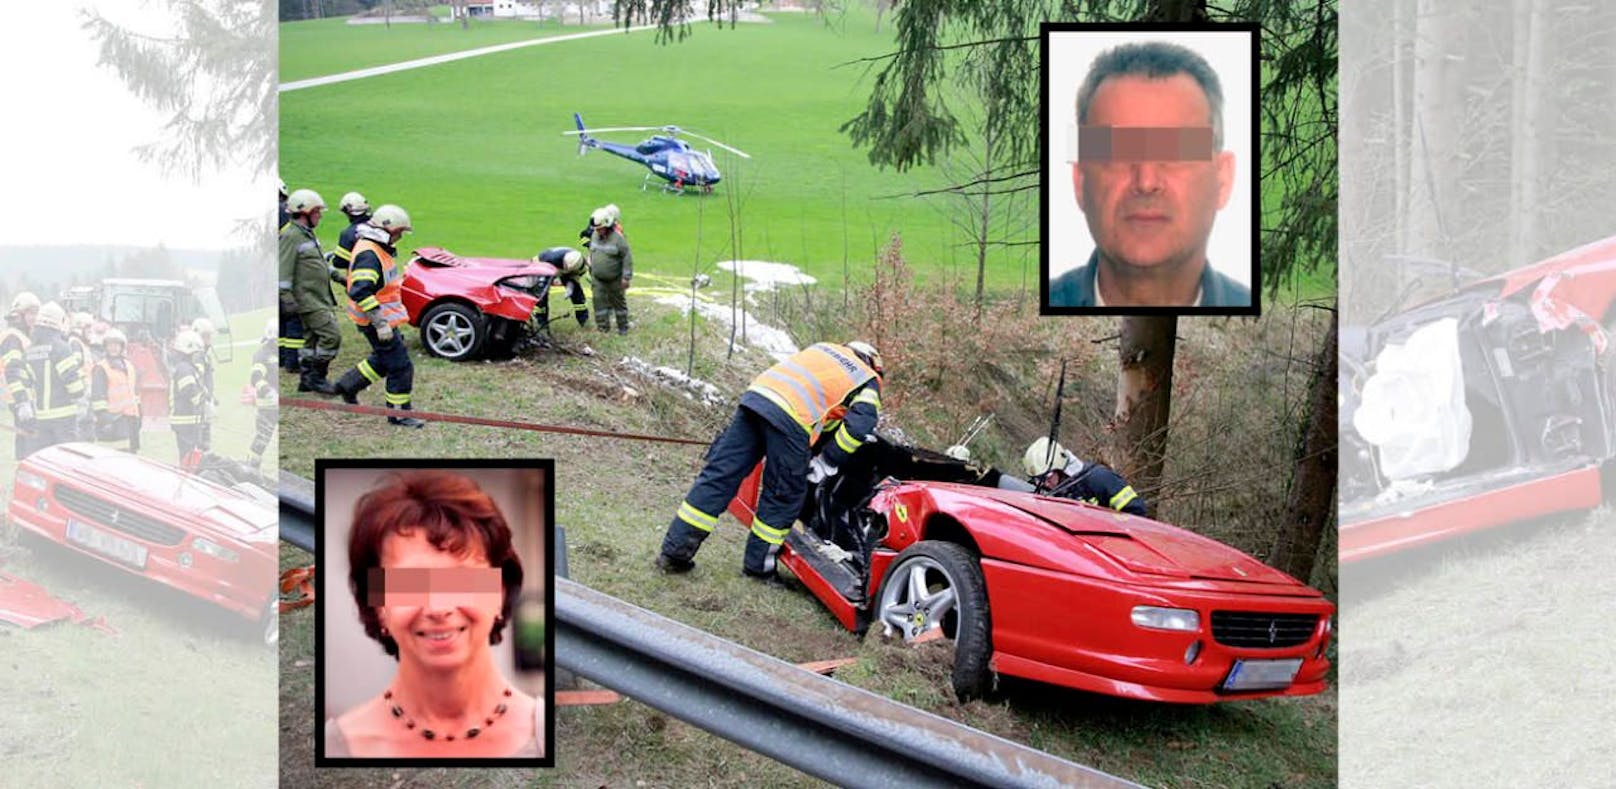 Vier Tage nach Ferrari-Crash wird Lenker beerdigt